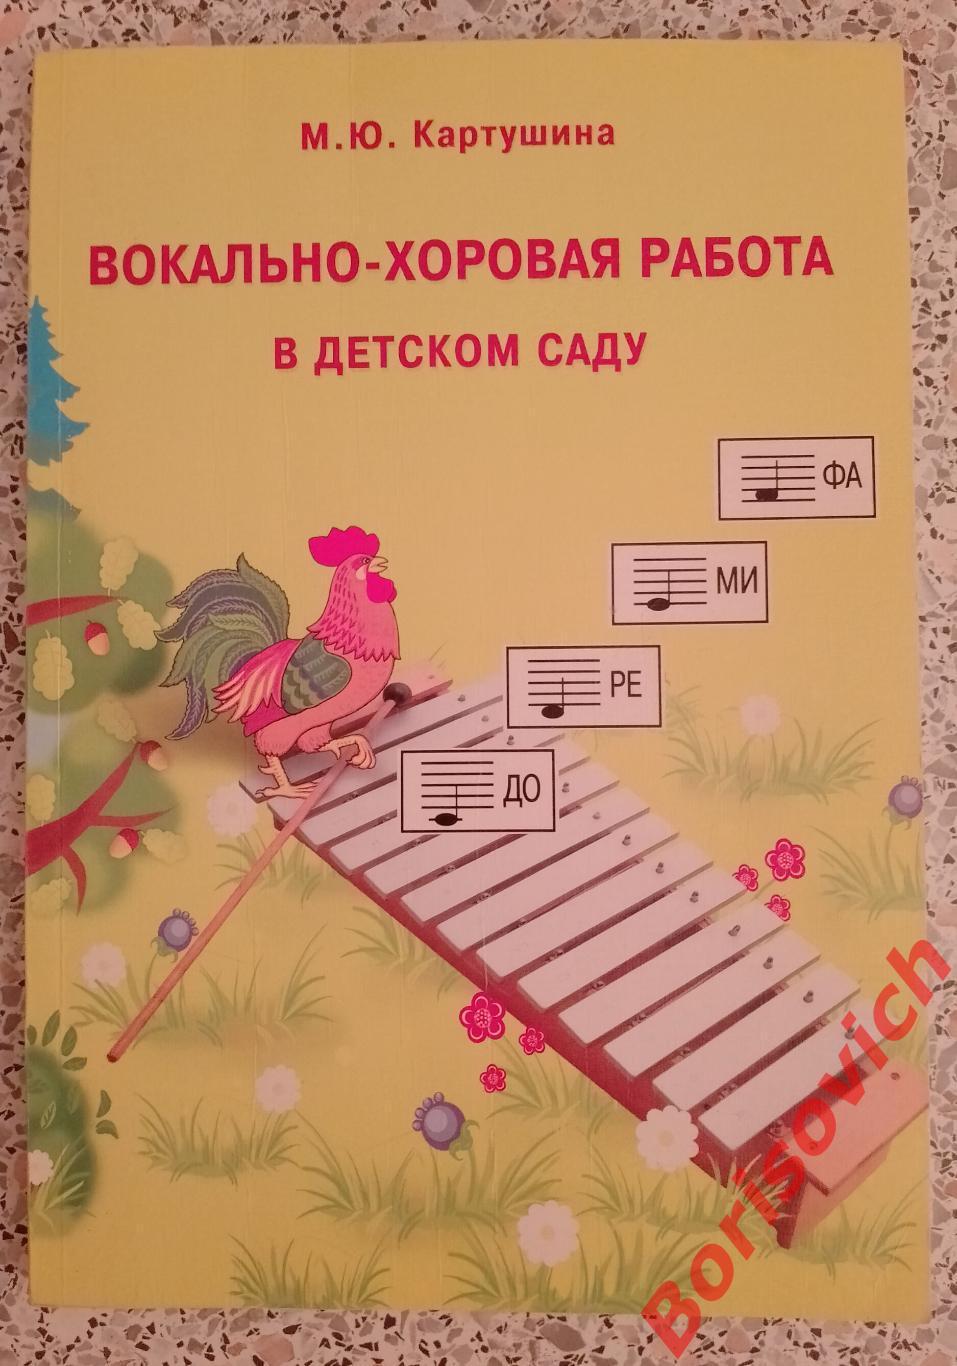 Вокально - хоровая работа в детском саду 2010 г 175 страниц Тираж 4000 экз